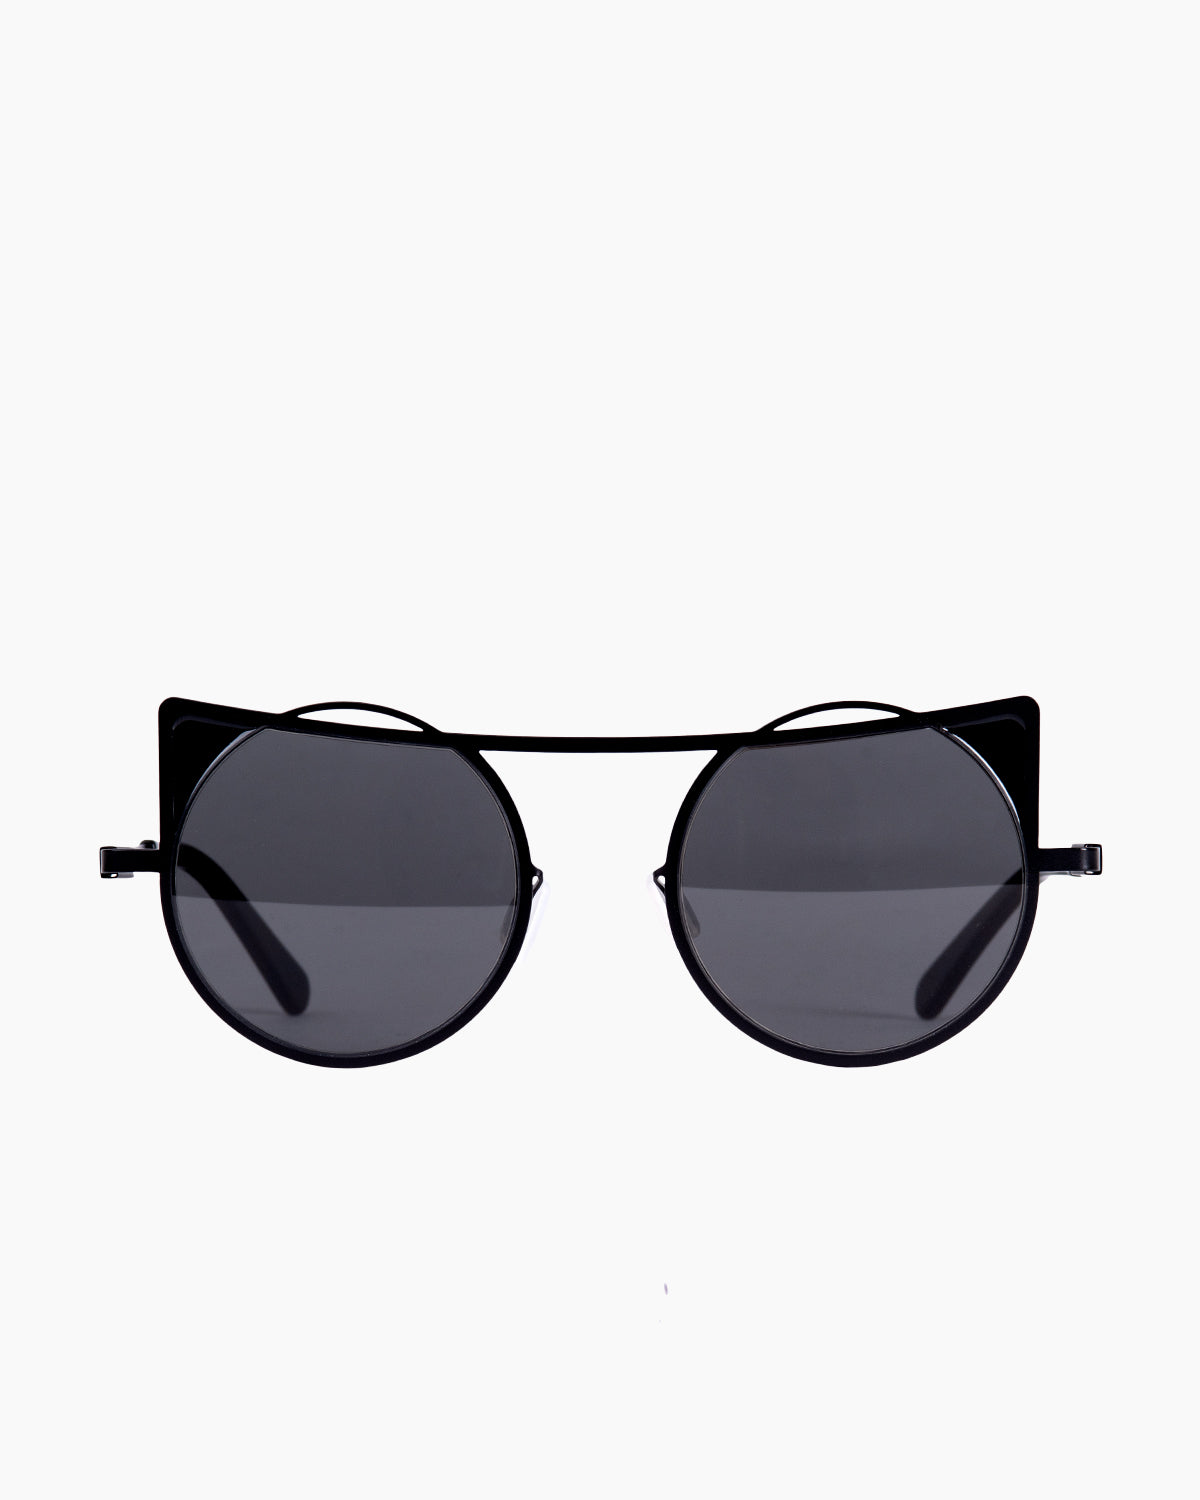 Gamine - CondesaS - Black/Black | Bar à lunettes:  Marie-Sophie Dion